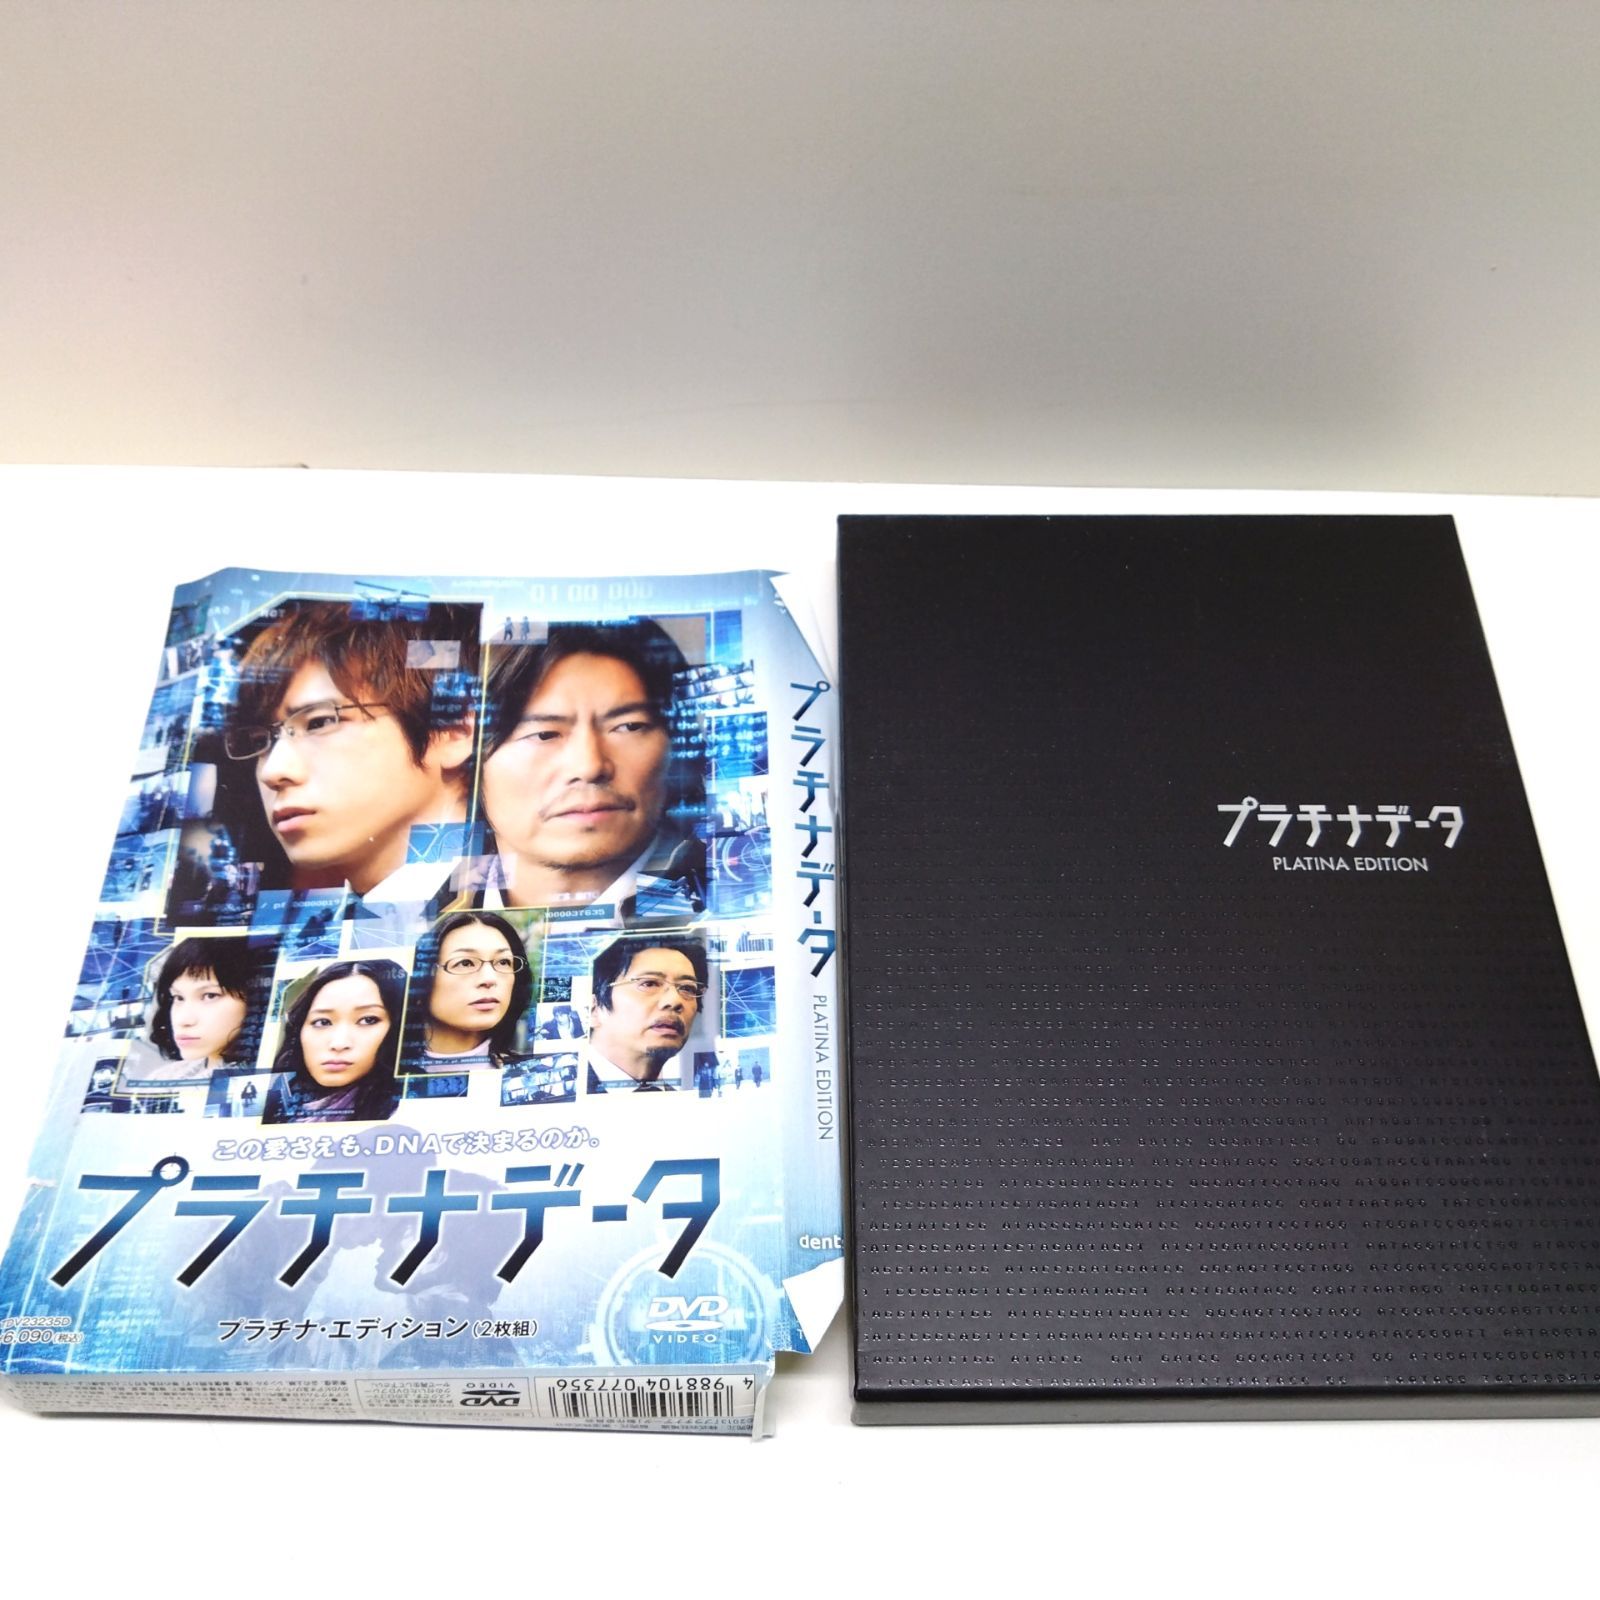 DVD新品 嵐 二宮和也 初回限定盤 プラチナデータ プラチナ